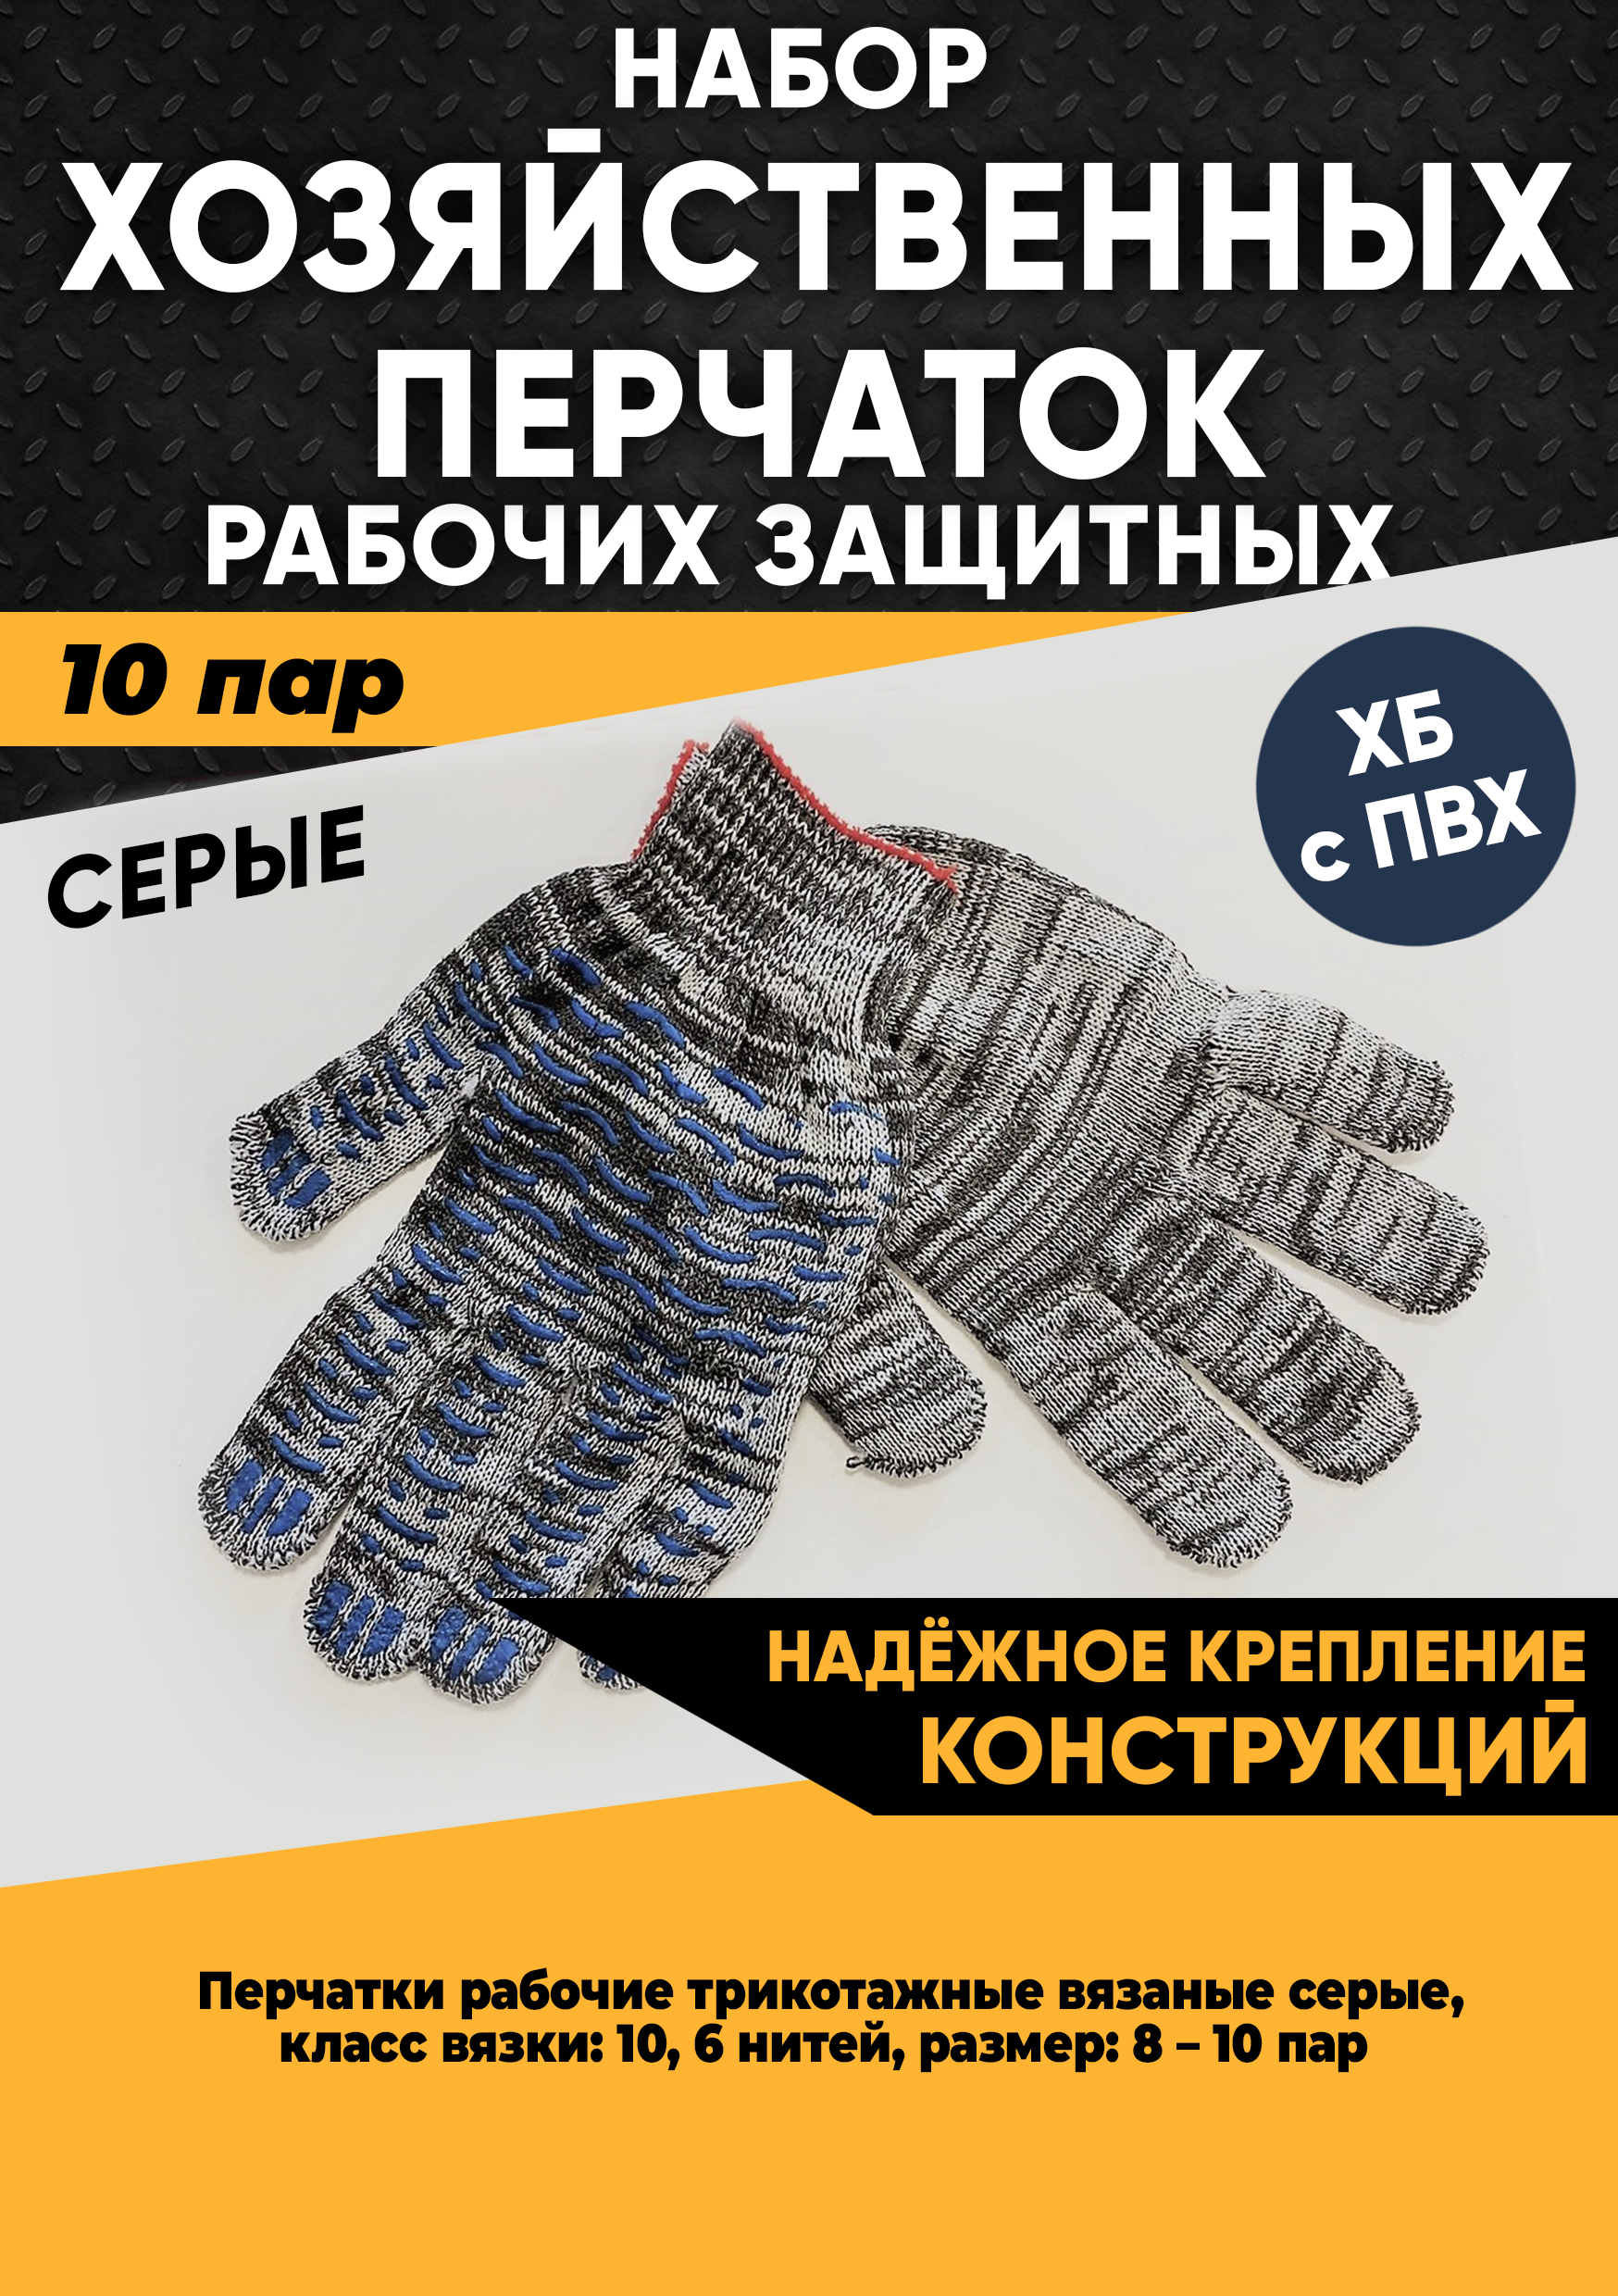 Хозяйственные перчатки KraSimall рабочие защитные ХБ с ПВХ, 6 нитей, серые, 10 пар, 100265 перчатки хозяйственные lomberta экстра прочные s